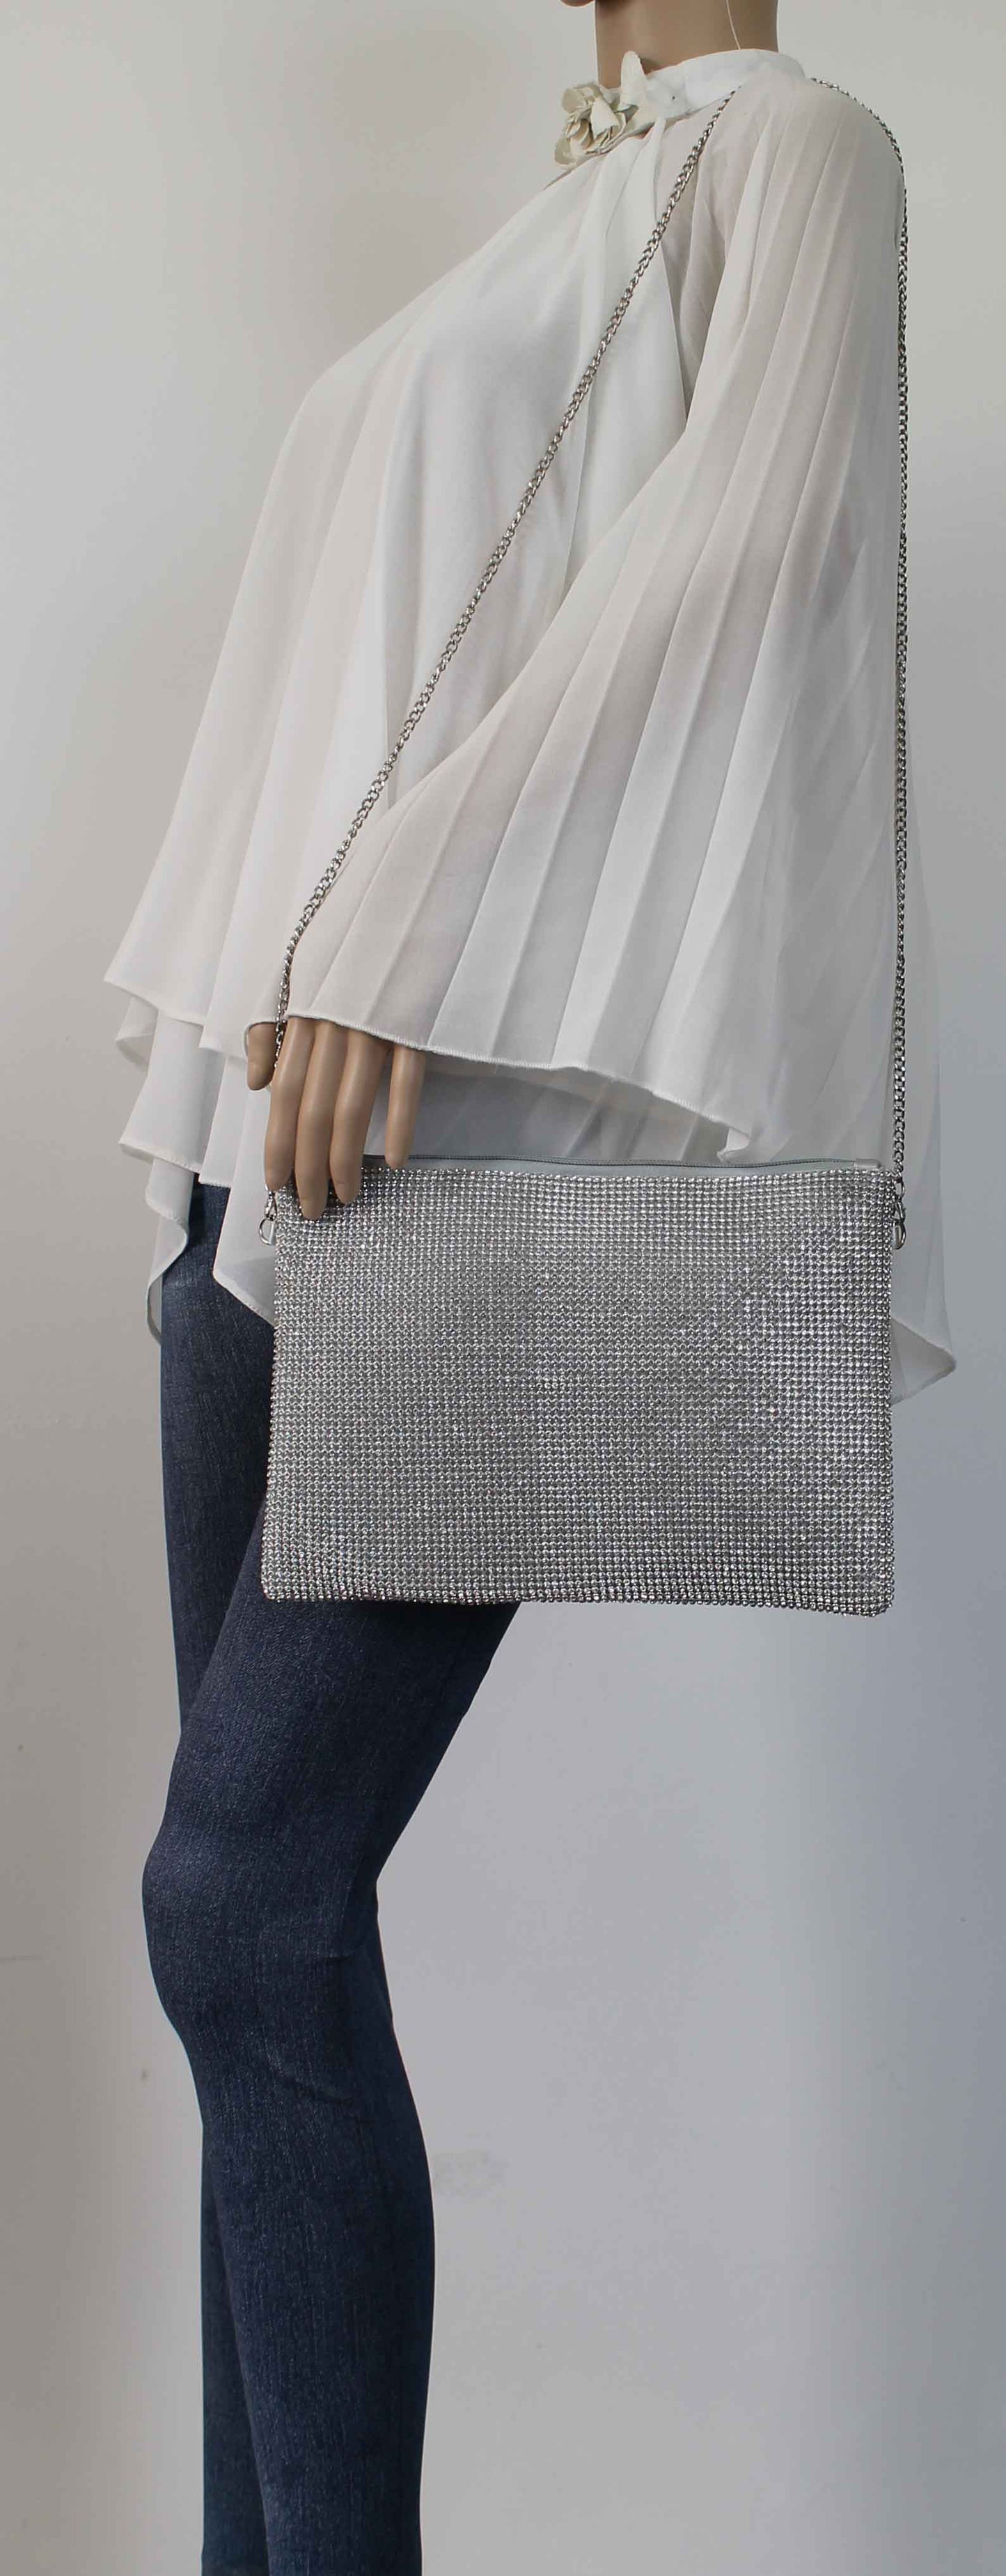 SWANKYSWANS Marla Slim Clutch Bag Silver Cute Cheap Clutch Bag For Weddings School and Work